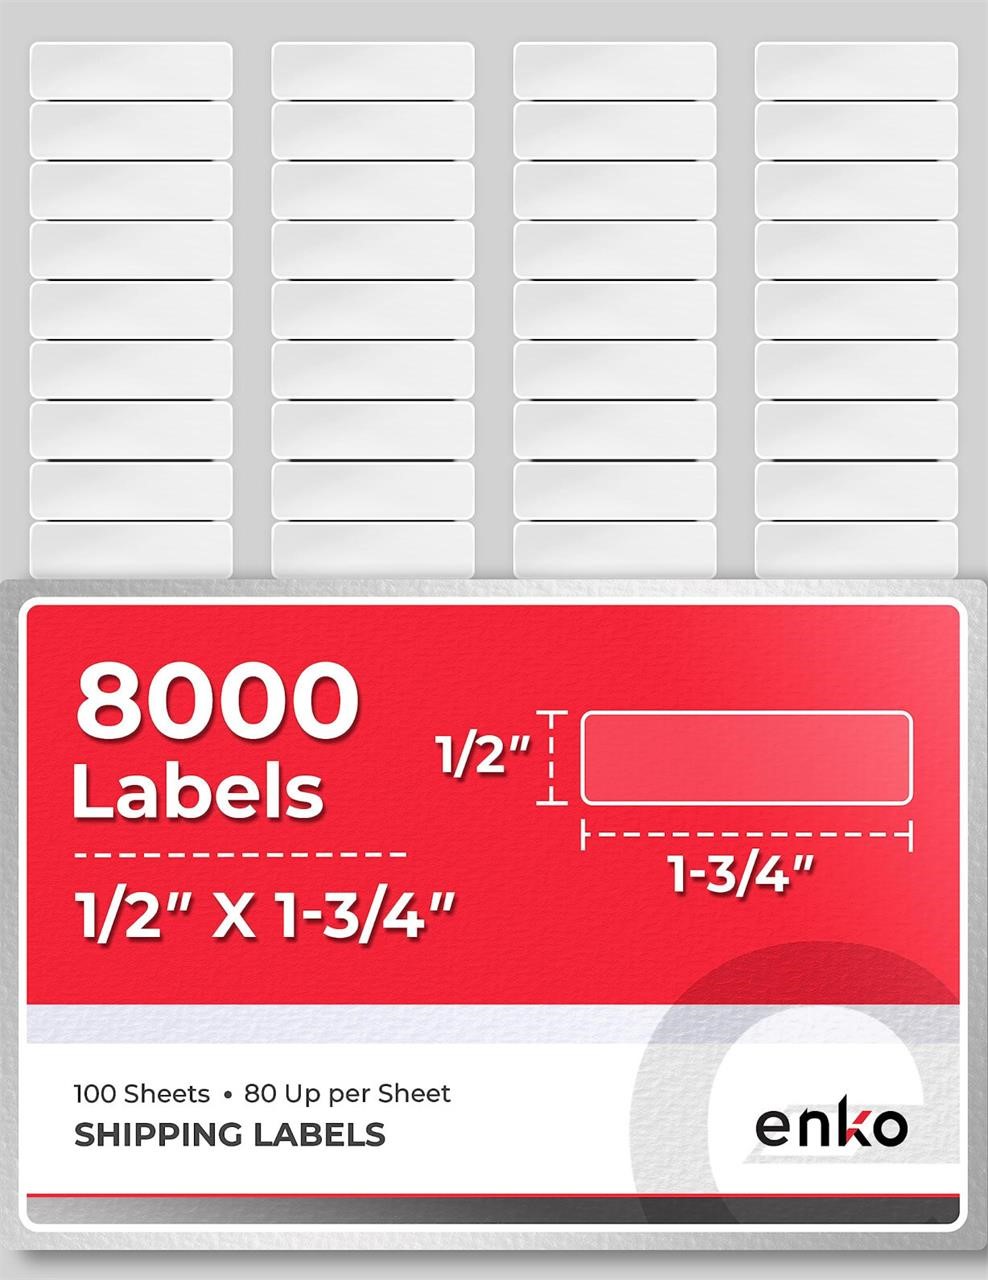 enKo 8000 Labels, 1/2" x 1-3/4" - White - Address